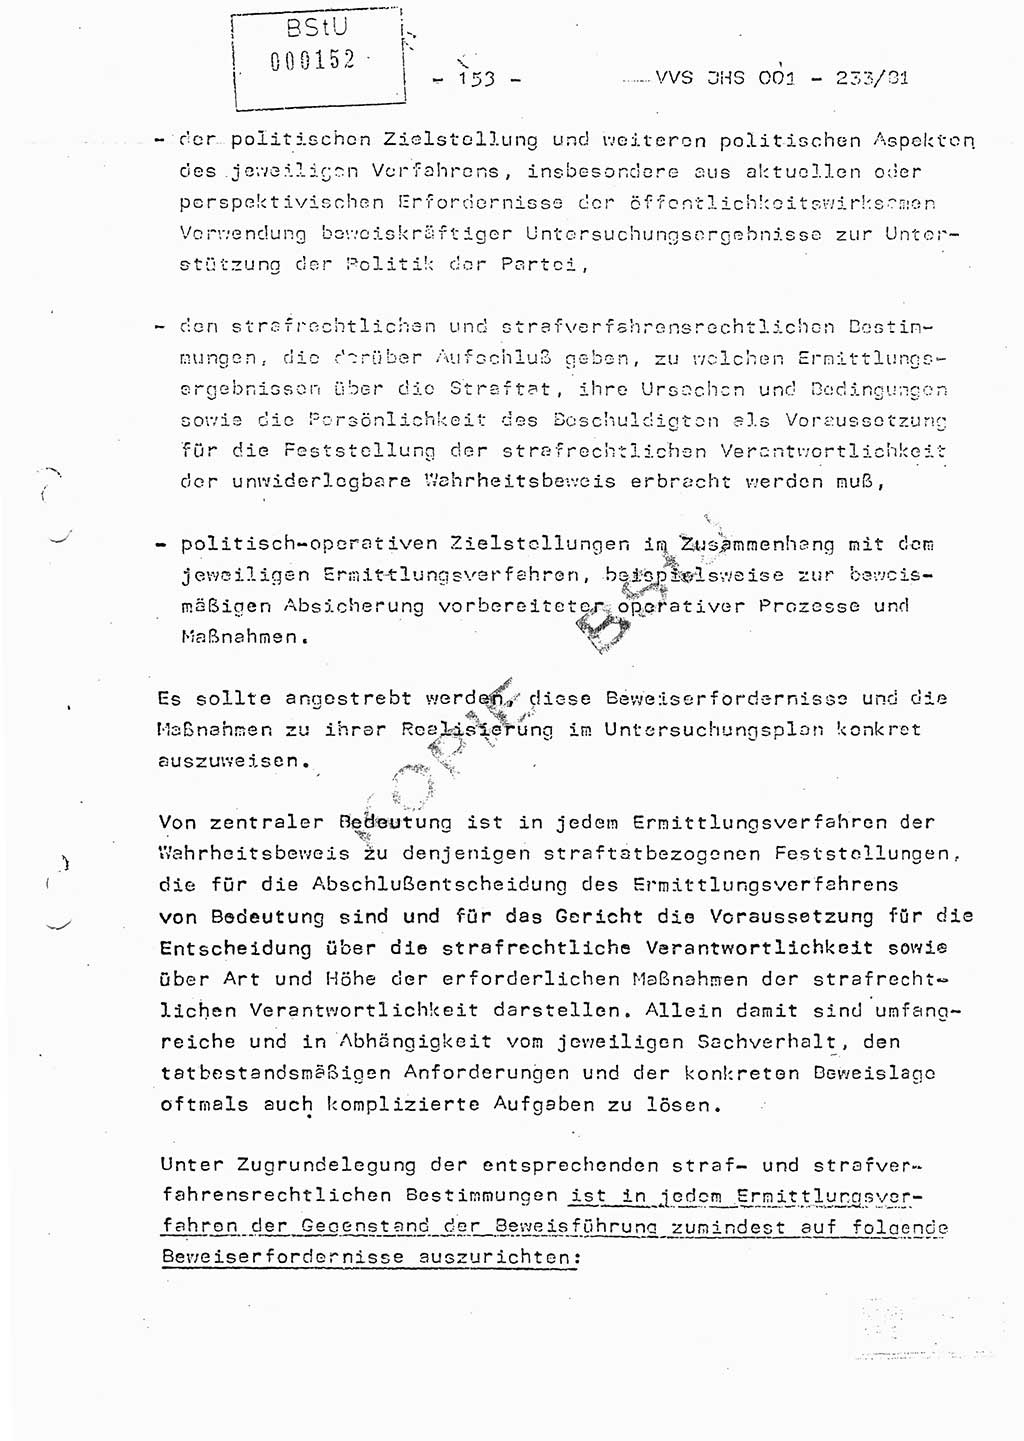 Dissertation Oberstleutnant Horst Zank (JHS), Oberstleutnant Dr. Karl-Heinz Knoblauch (JHS), Oberstleutnant Gustav-Adolf Kowalewski (HA Ⅸ), Oberstleutnant Wolfgang Plötner (HA Ⅸ), Ministerium für Staatssicherheit (MfS) [Deutsche Demokratische Republik (DDR)], Juristische Hochschule (JHS), Vertrauliche Verschlußsache (VVS) o001-233/81, Potsdam 1981, Blatt 153 (Diss. MfS DDR JHS VVS o001-233/81 1981, Bl. 153)